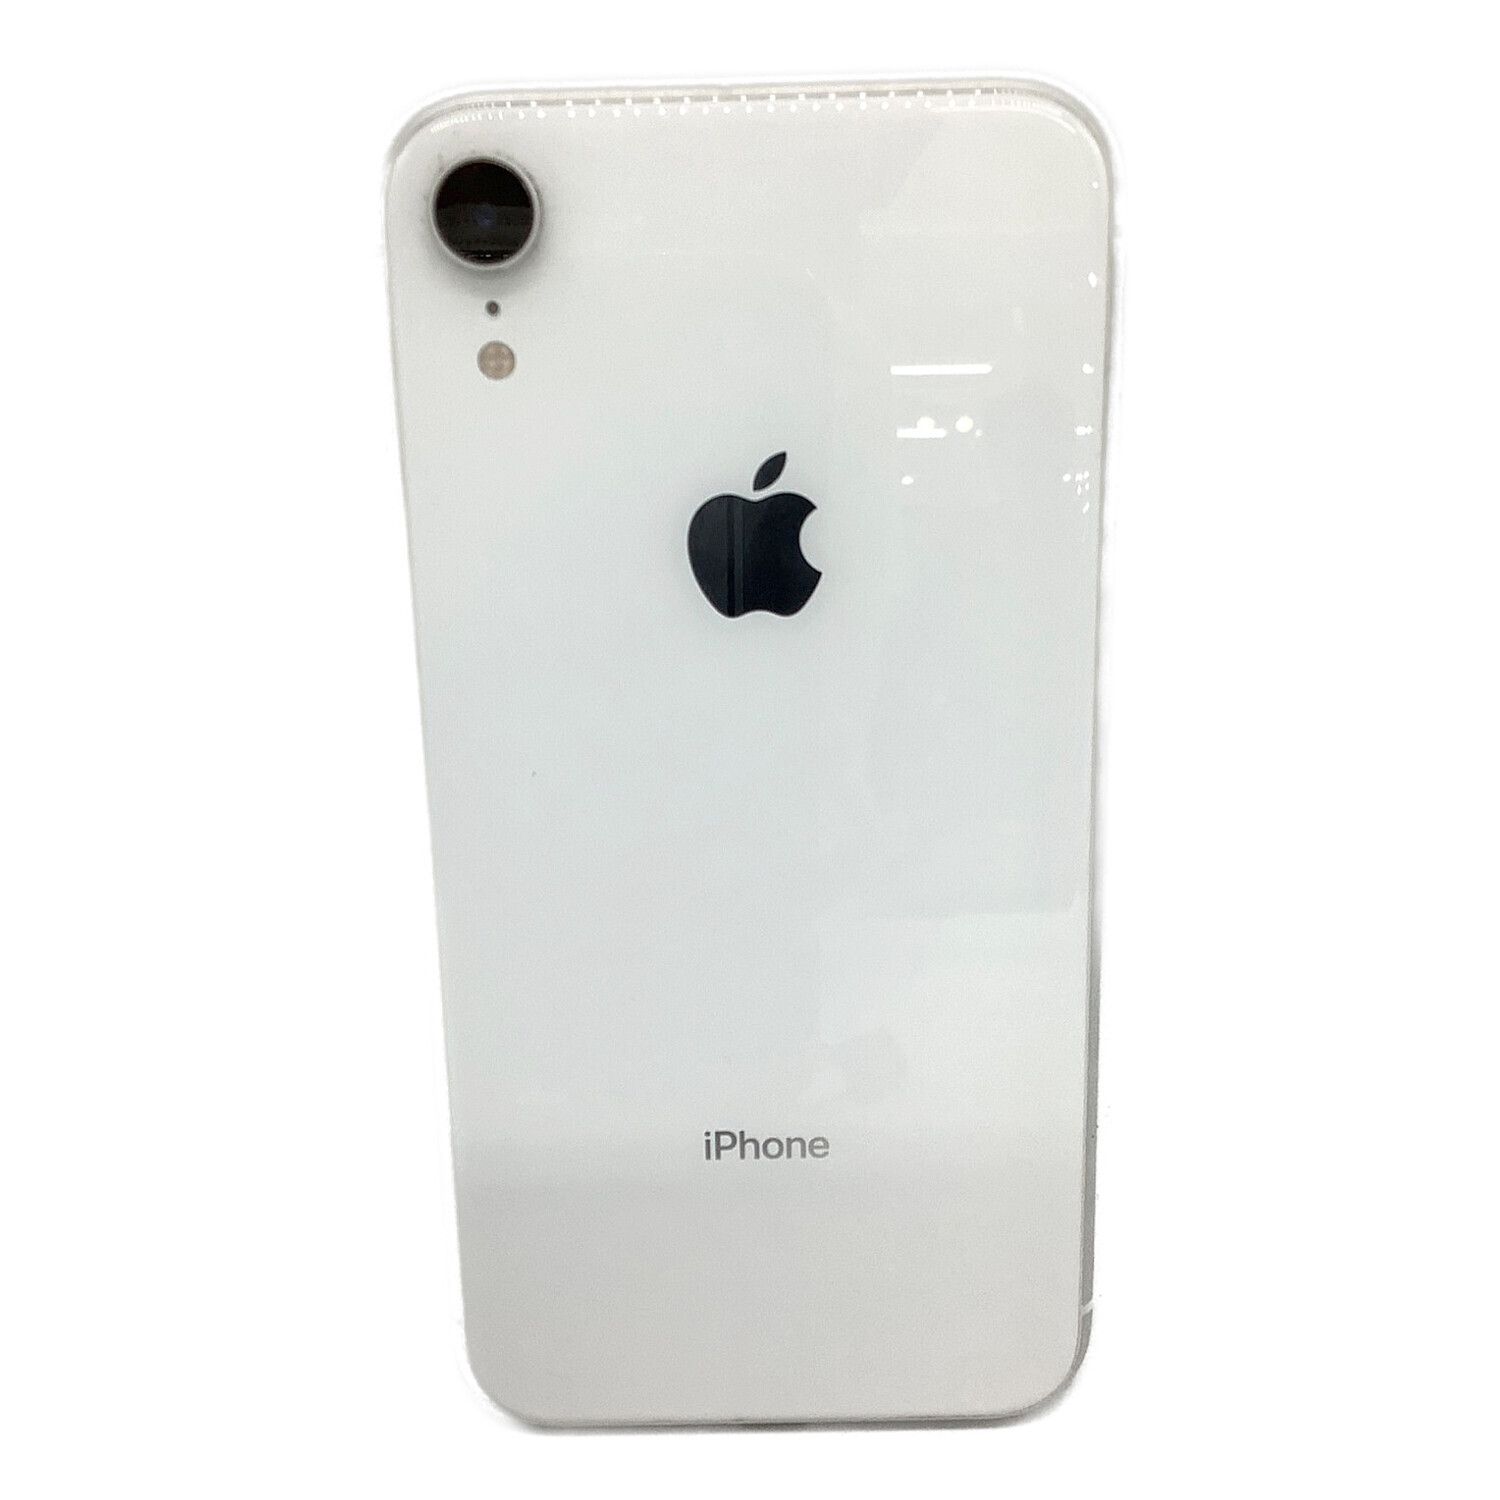 Apple (アップル) iPhoneXR 64GB MT032J/A SIMフリー iOS バッテリー:B